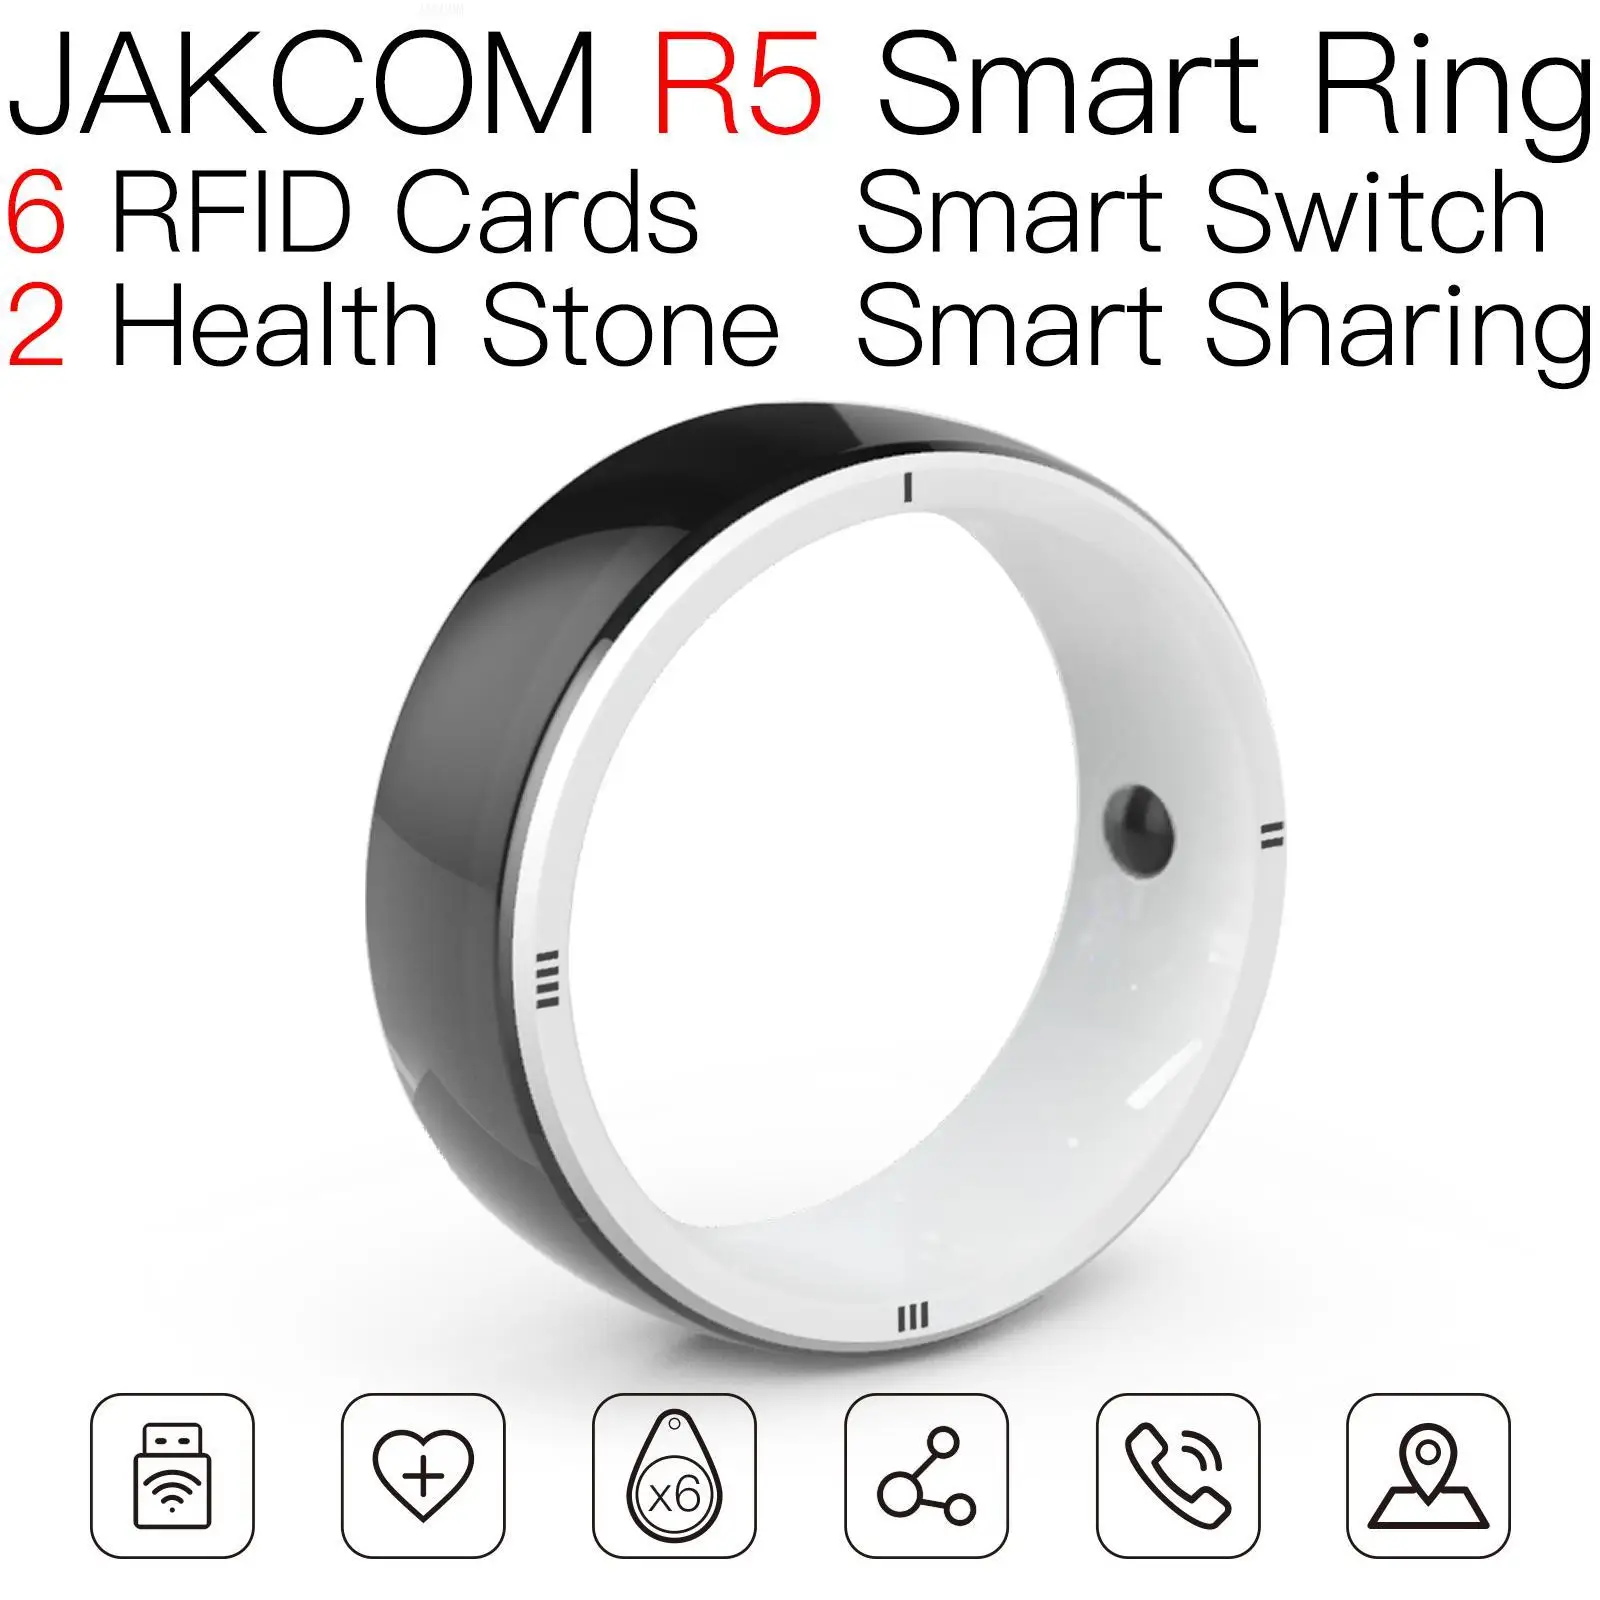 

JAKCOM R5 умное кольцо супер значение как band m5 официальный мотор часы с наушниками магазин мужчин бесплатная доставка